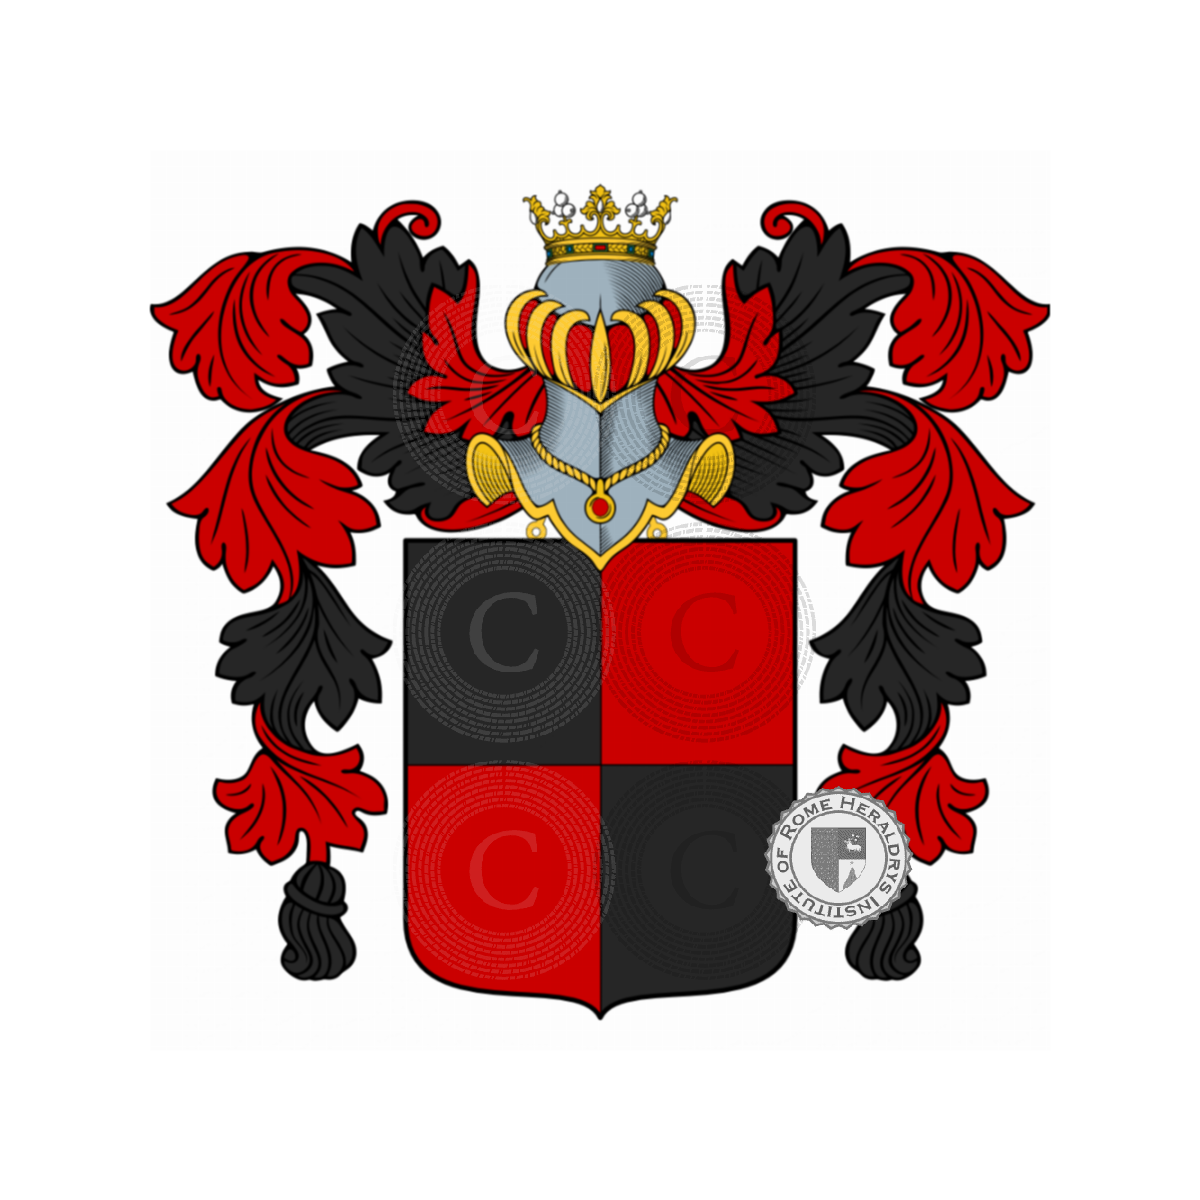 Escudo de la familiaBrizi, Brizi,Brizi Falletti,Brizzi